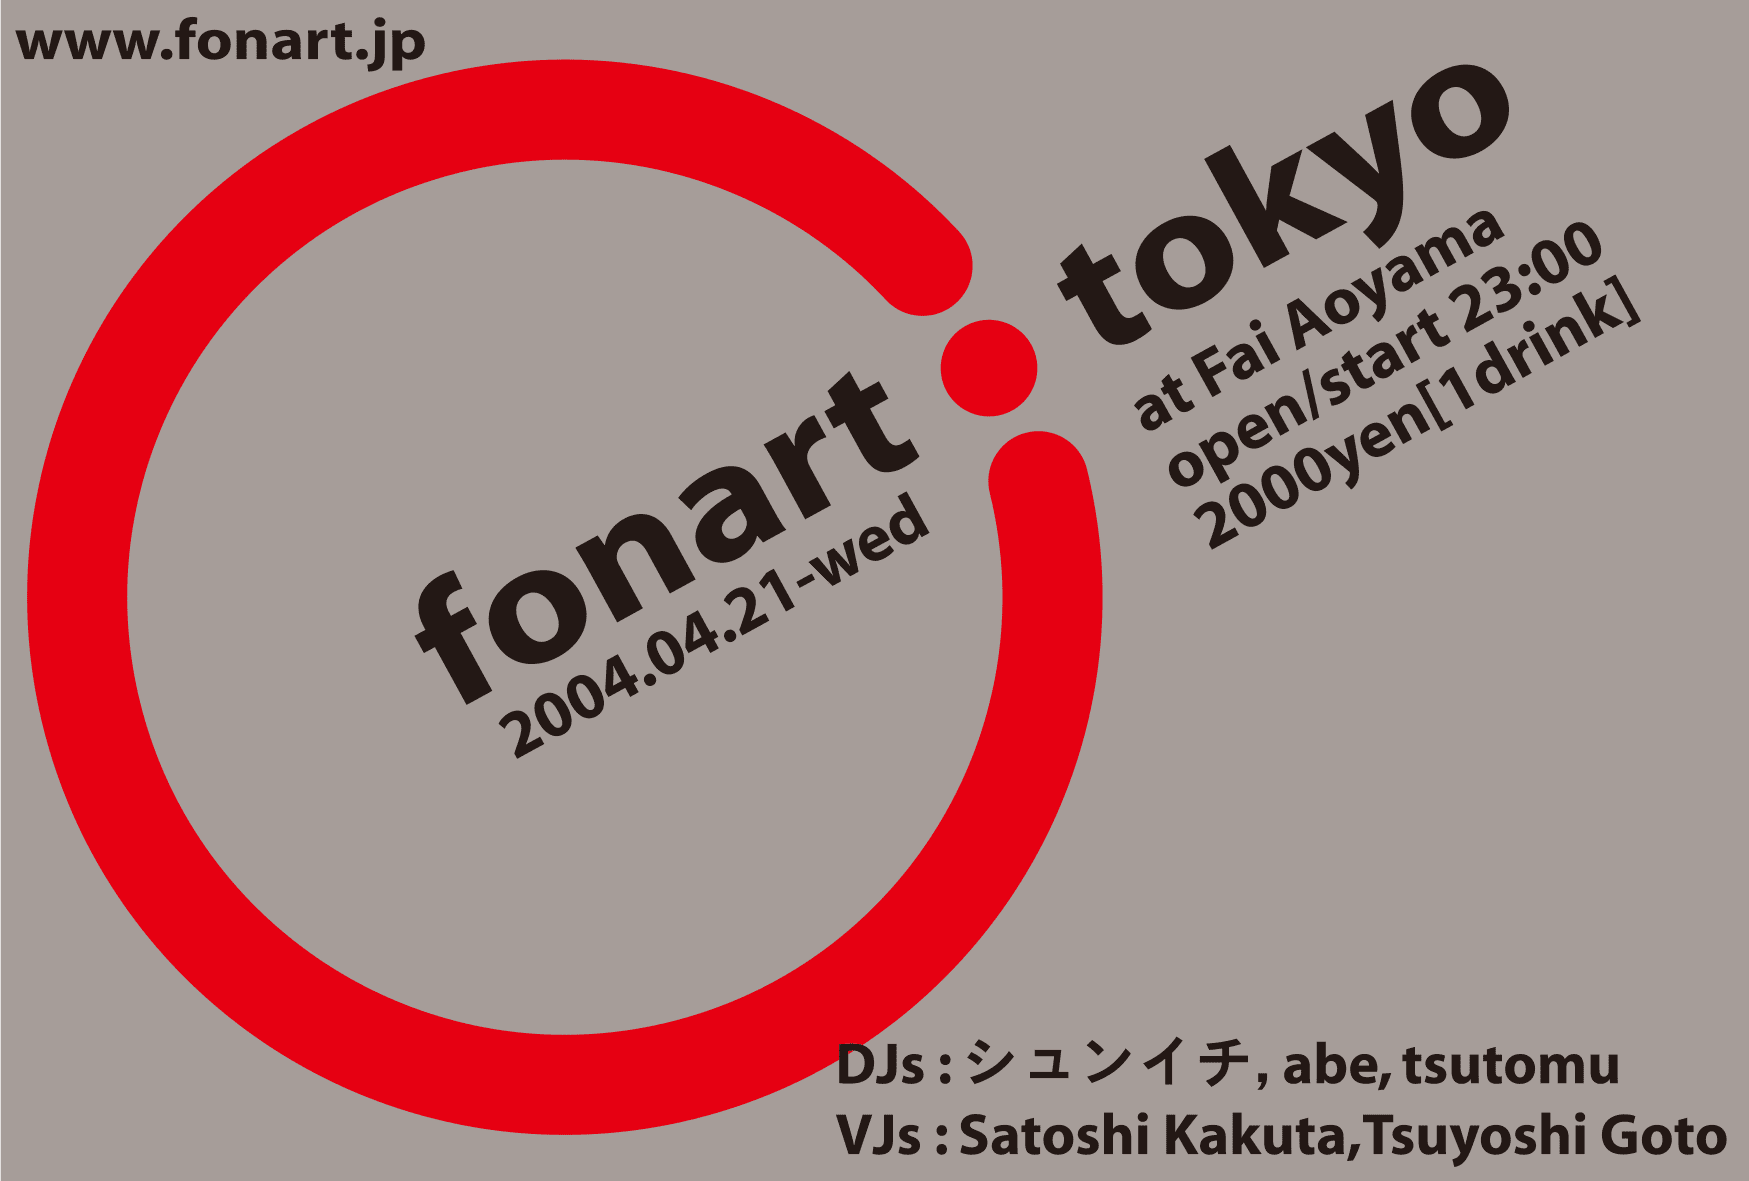 20040421 Fonart Party